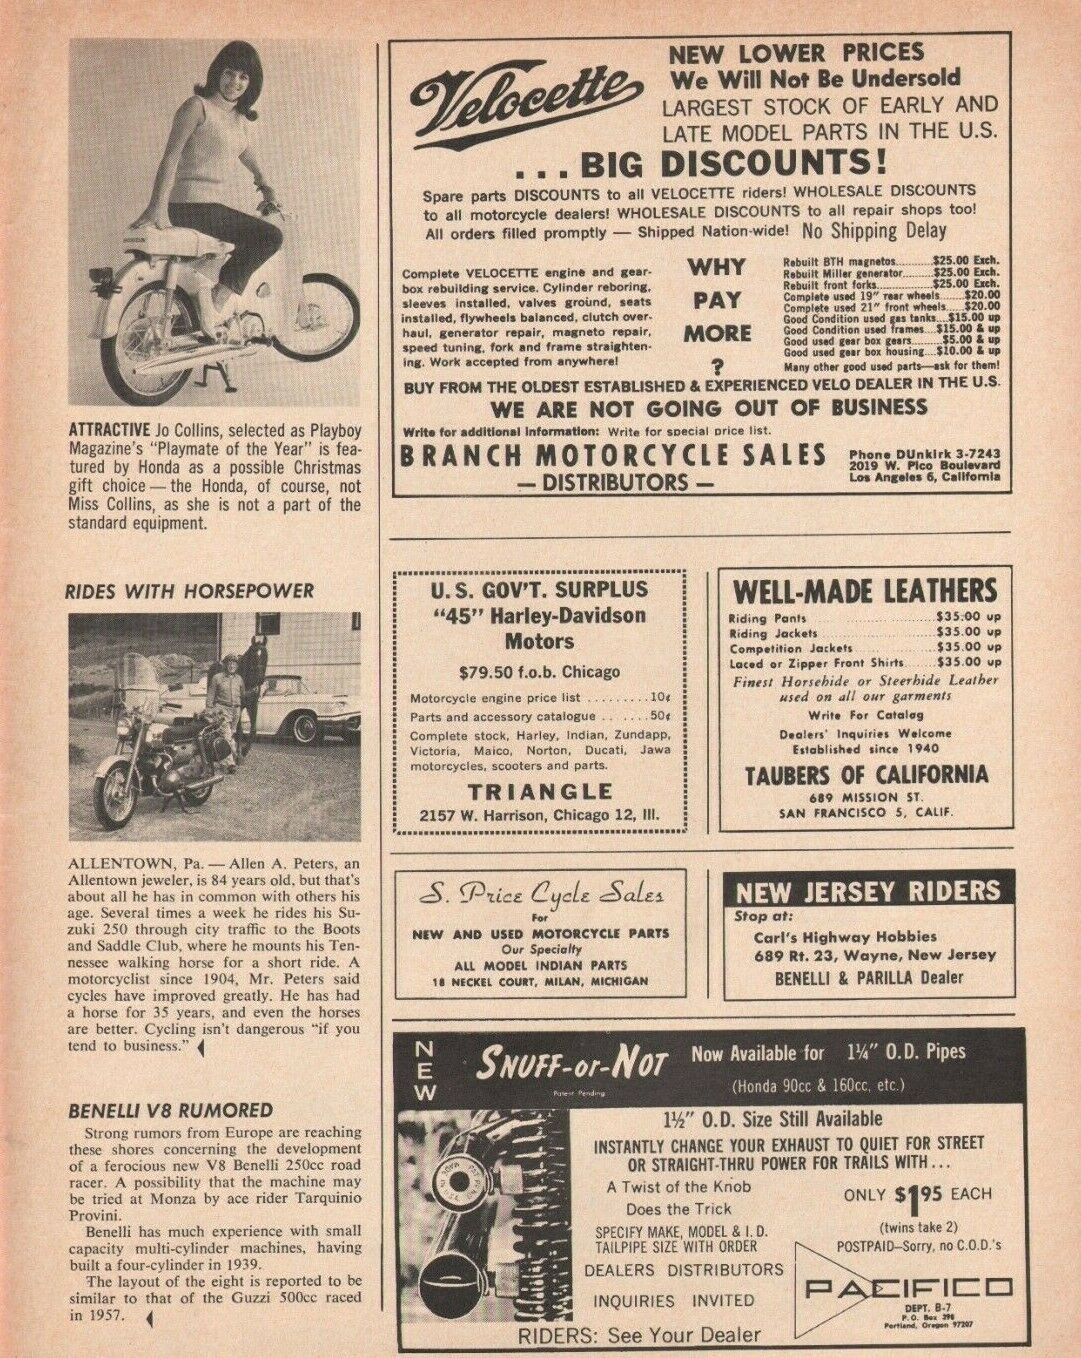 1965 Allen A. Peters, Allentown, PA Jeweler - Vintage Suzuki Motorcycle Article